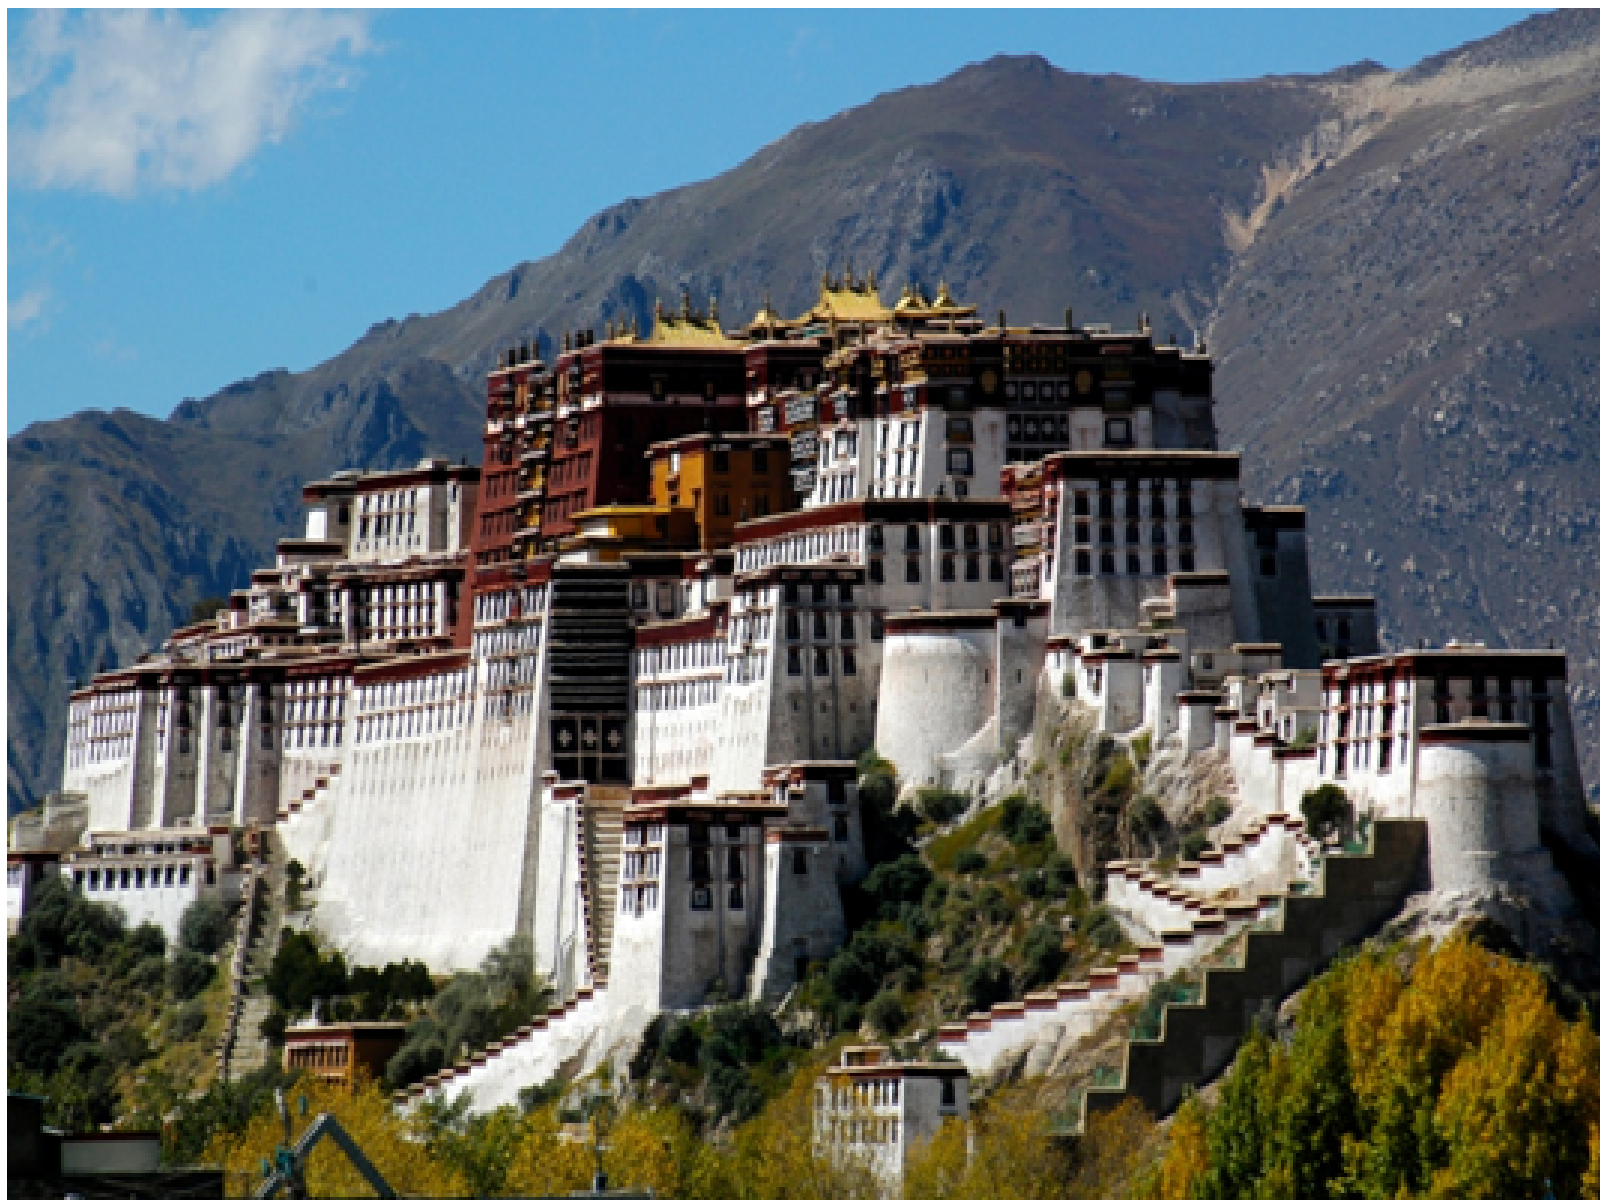 The Potala Palace, Tibet 